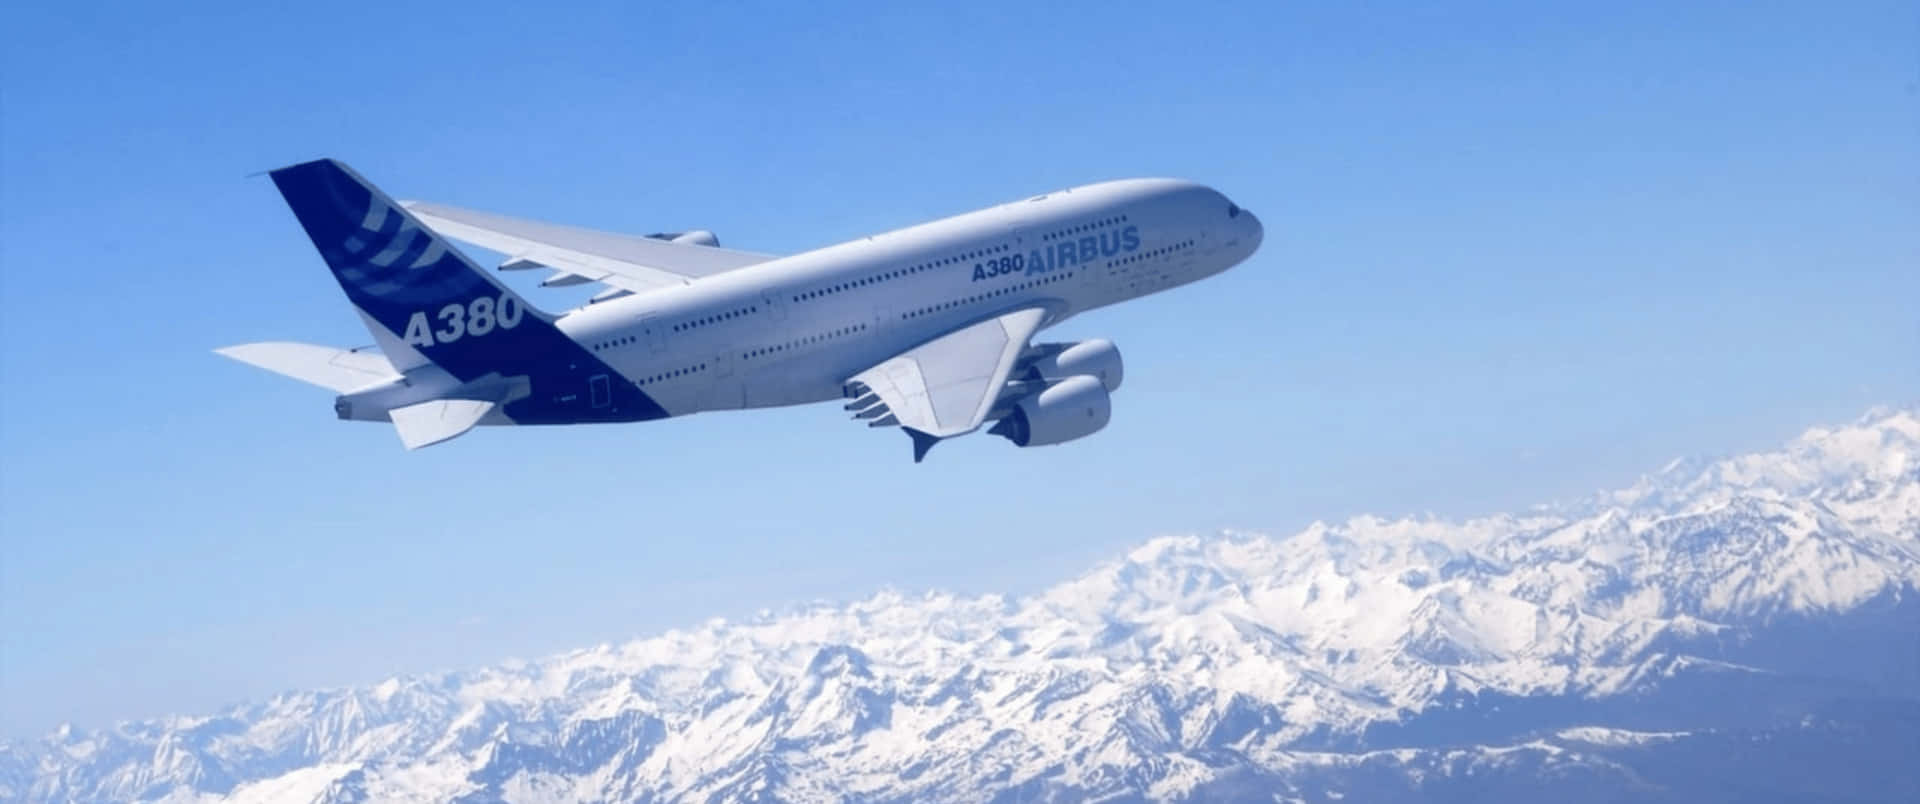 3440x1440pavión Airbus A380 Sobre Fondo Blanco